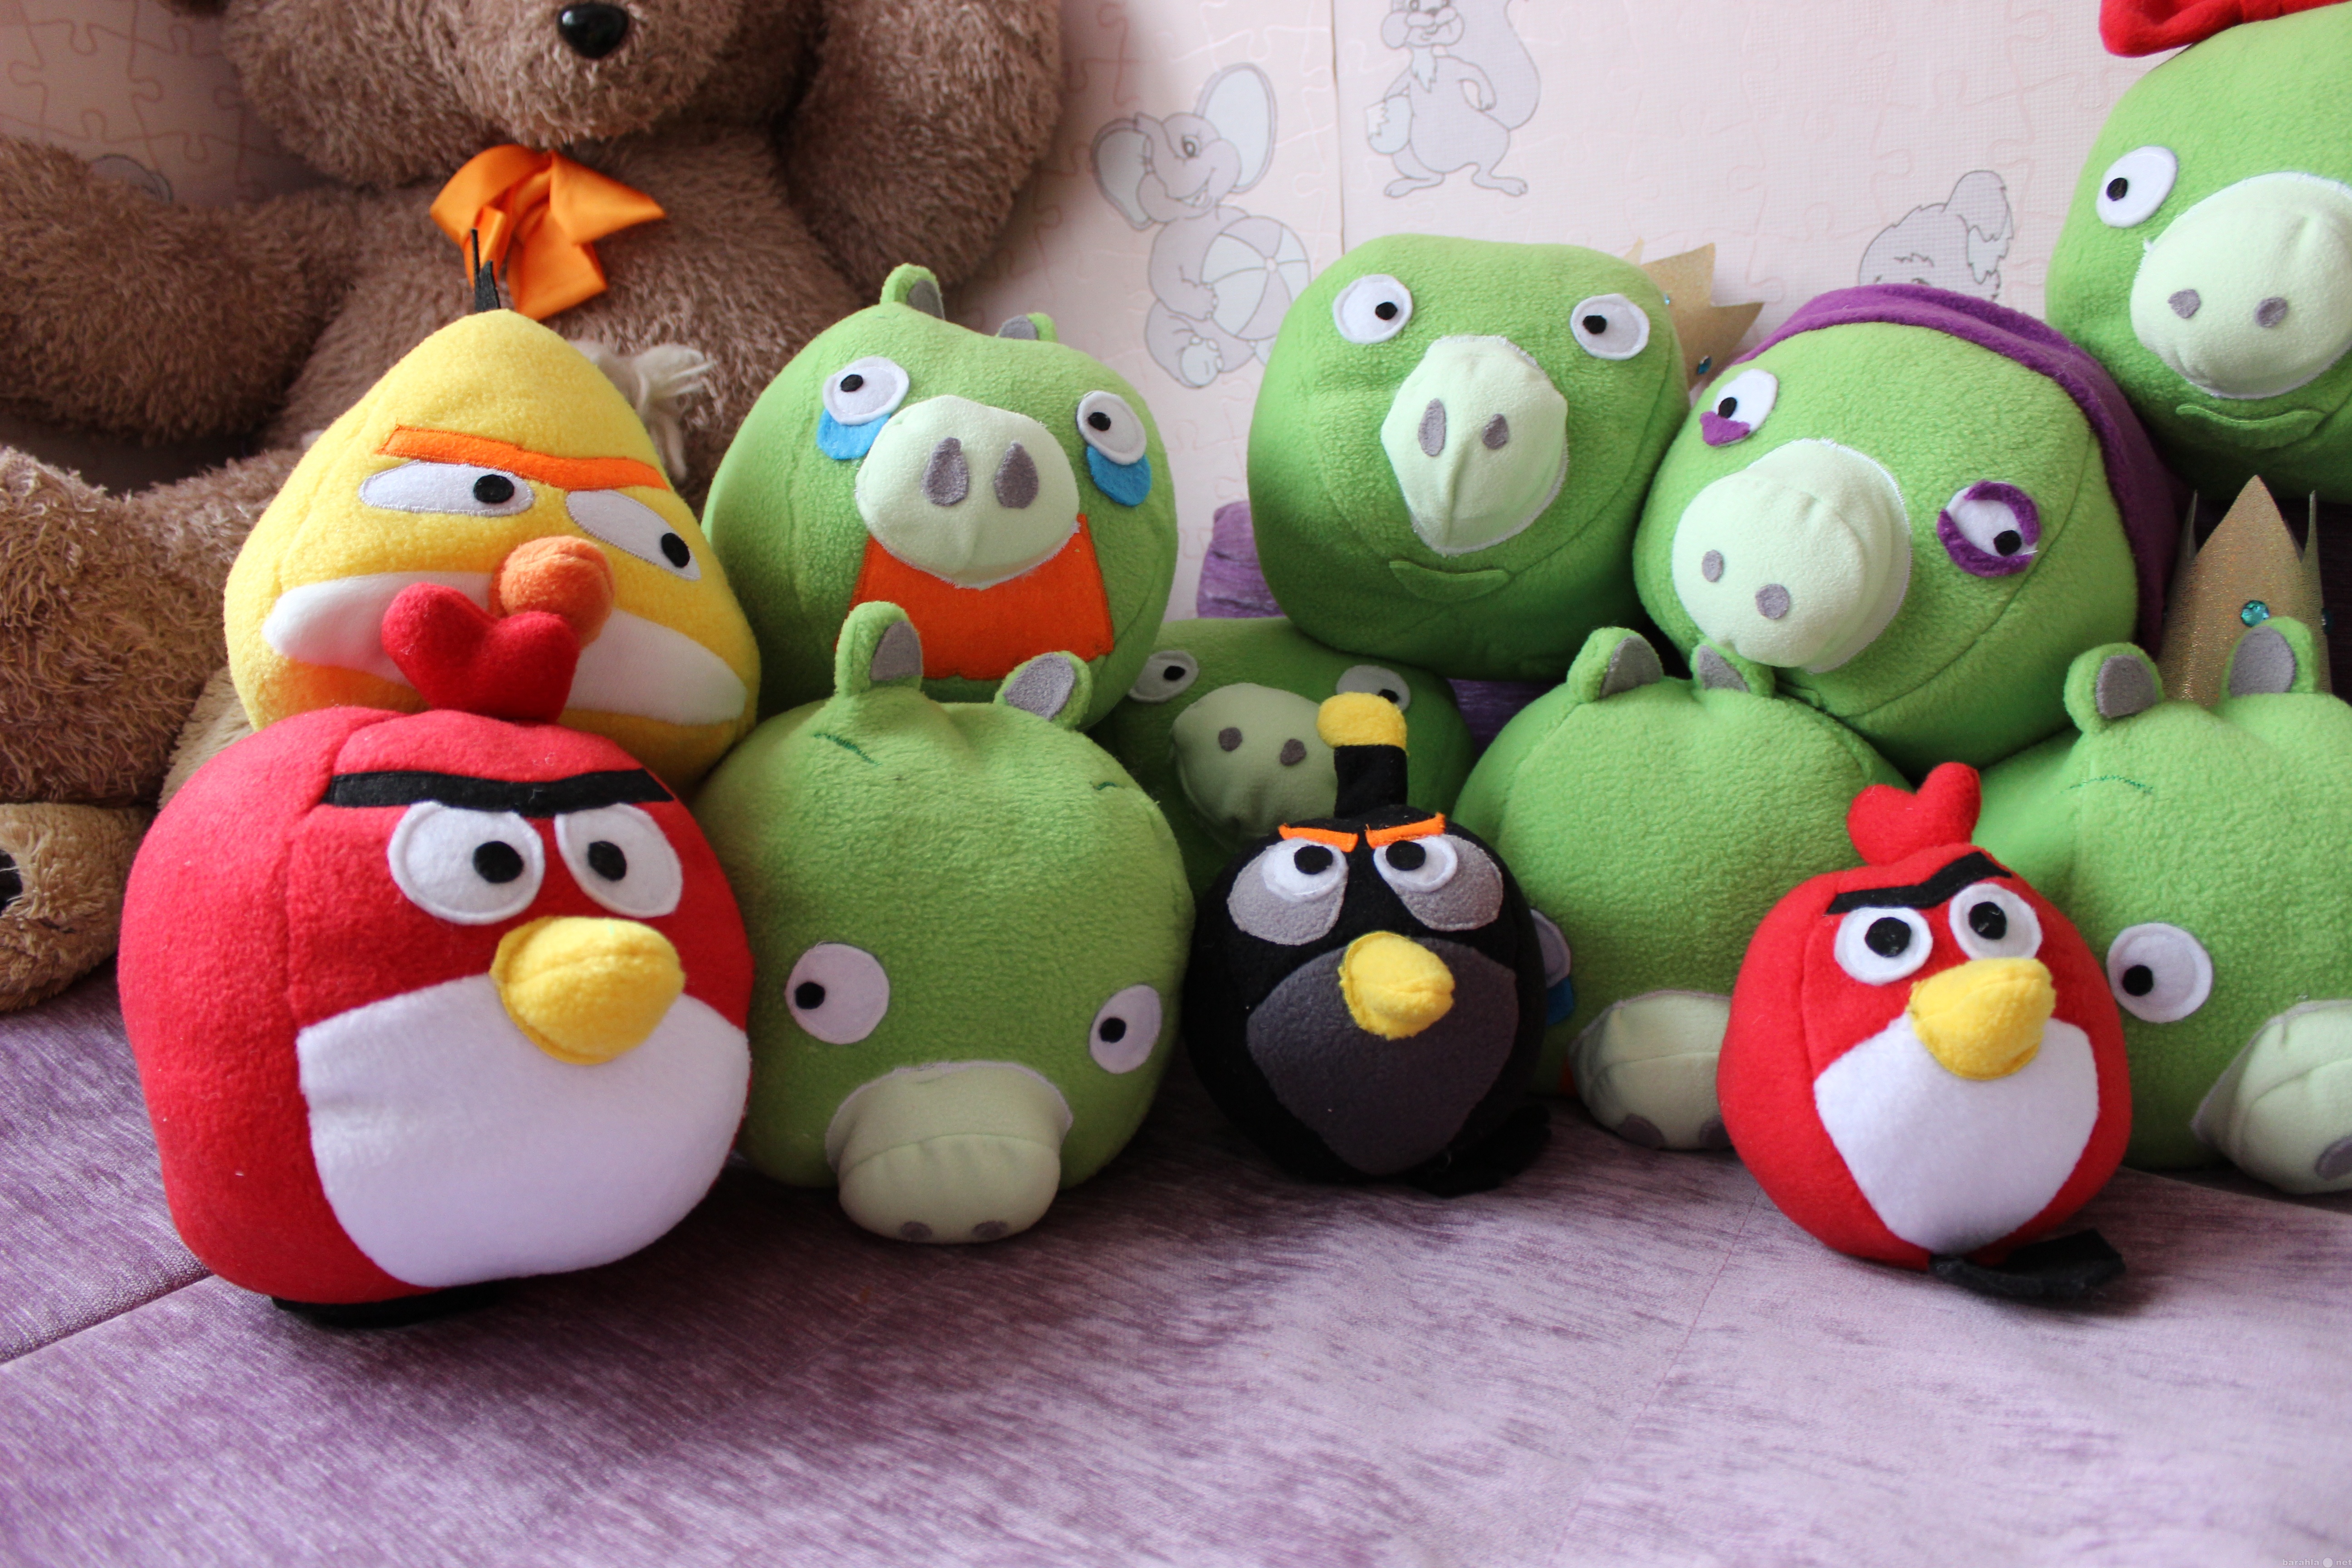 Мягкие игрушки энгри бердз. Мягкая игрушка Энгри бердз. Angry Birds мягкие игрушки. Пластмассовые игрушки Angry Birds. Angry Birds набор плюшевые игрушки.